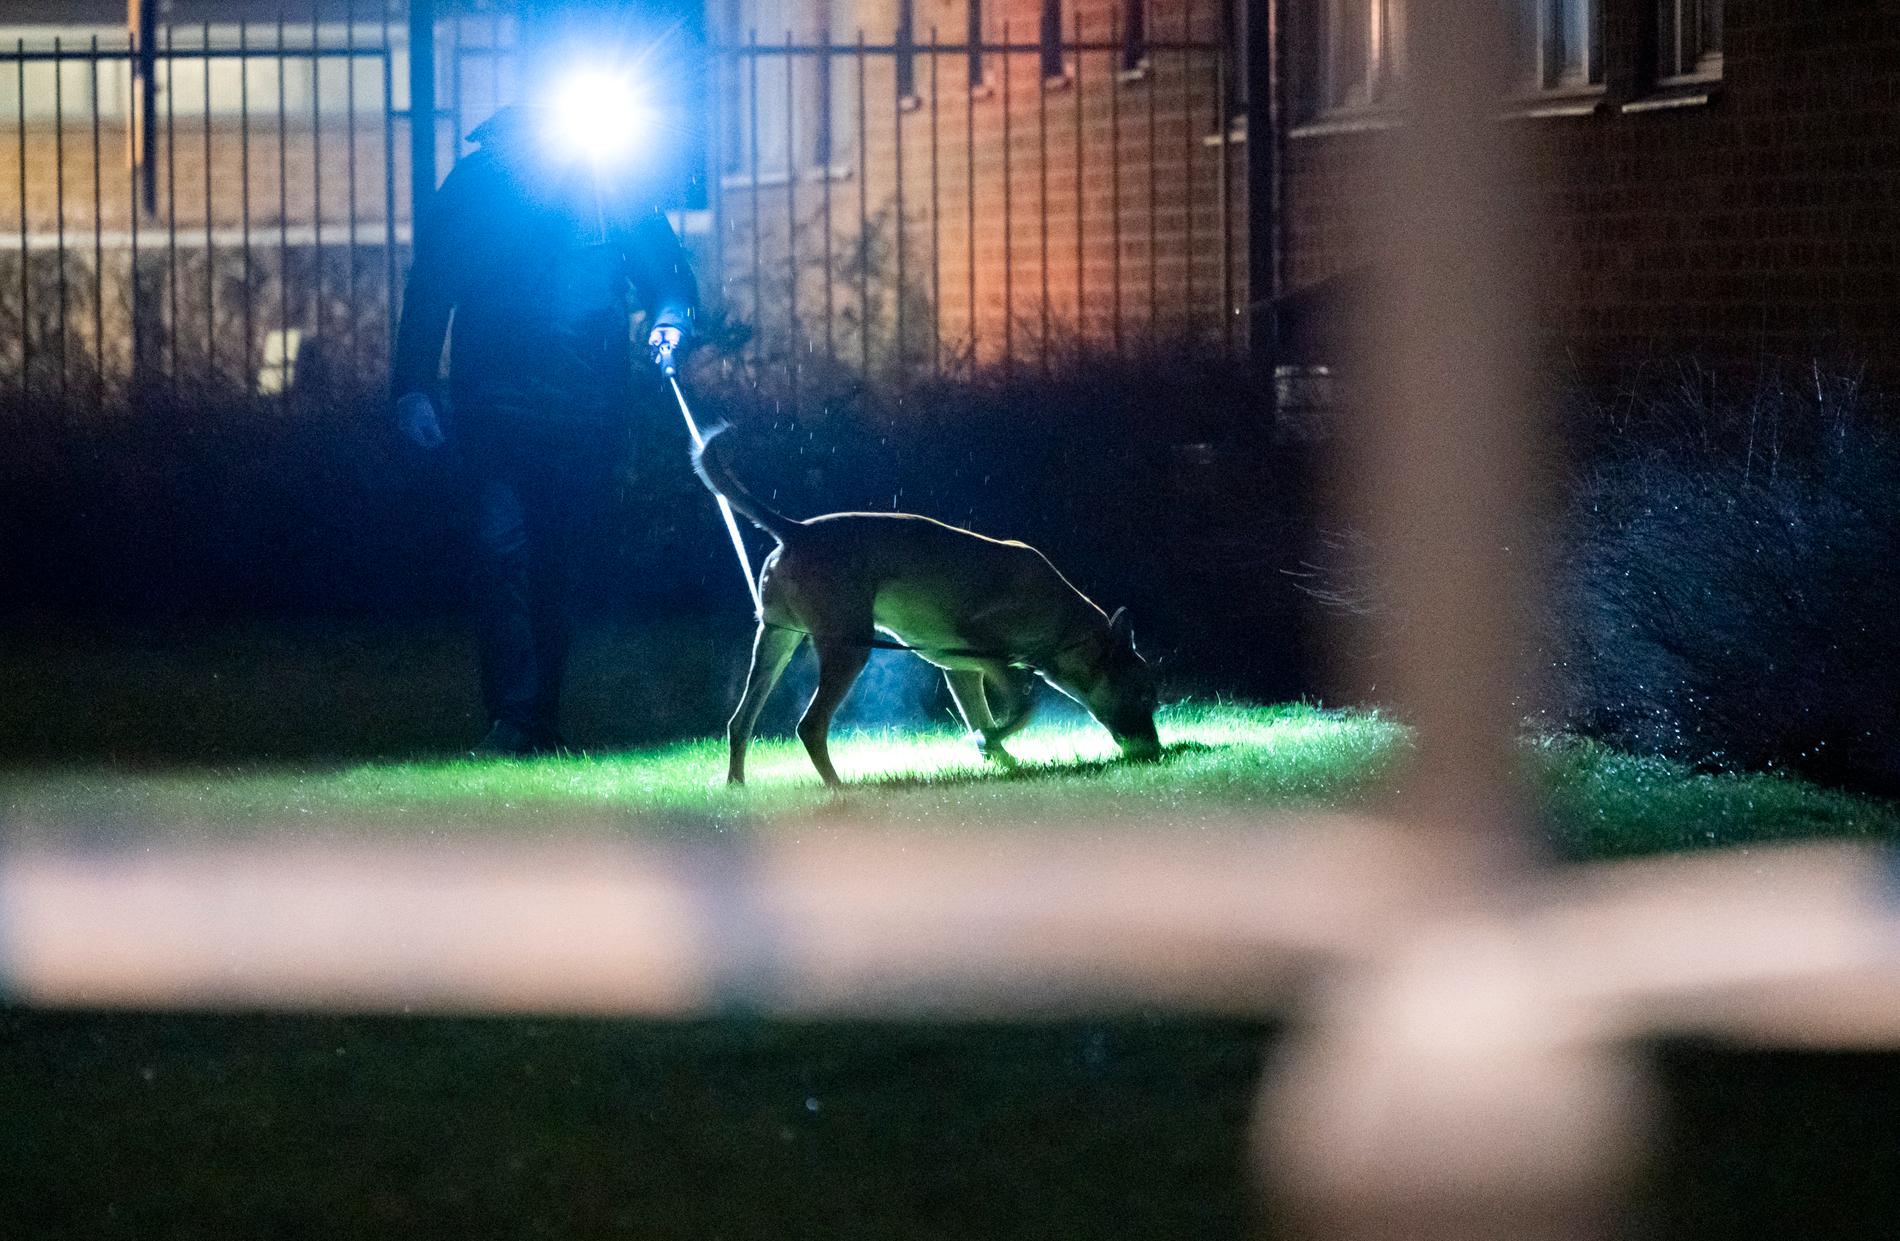 Polis med specialsökhund arbetar innanför avspärrningarna efter ett misstänkt mordförsök i Söderkulla i Malmö på fredagskvällen.